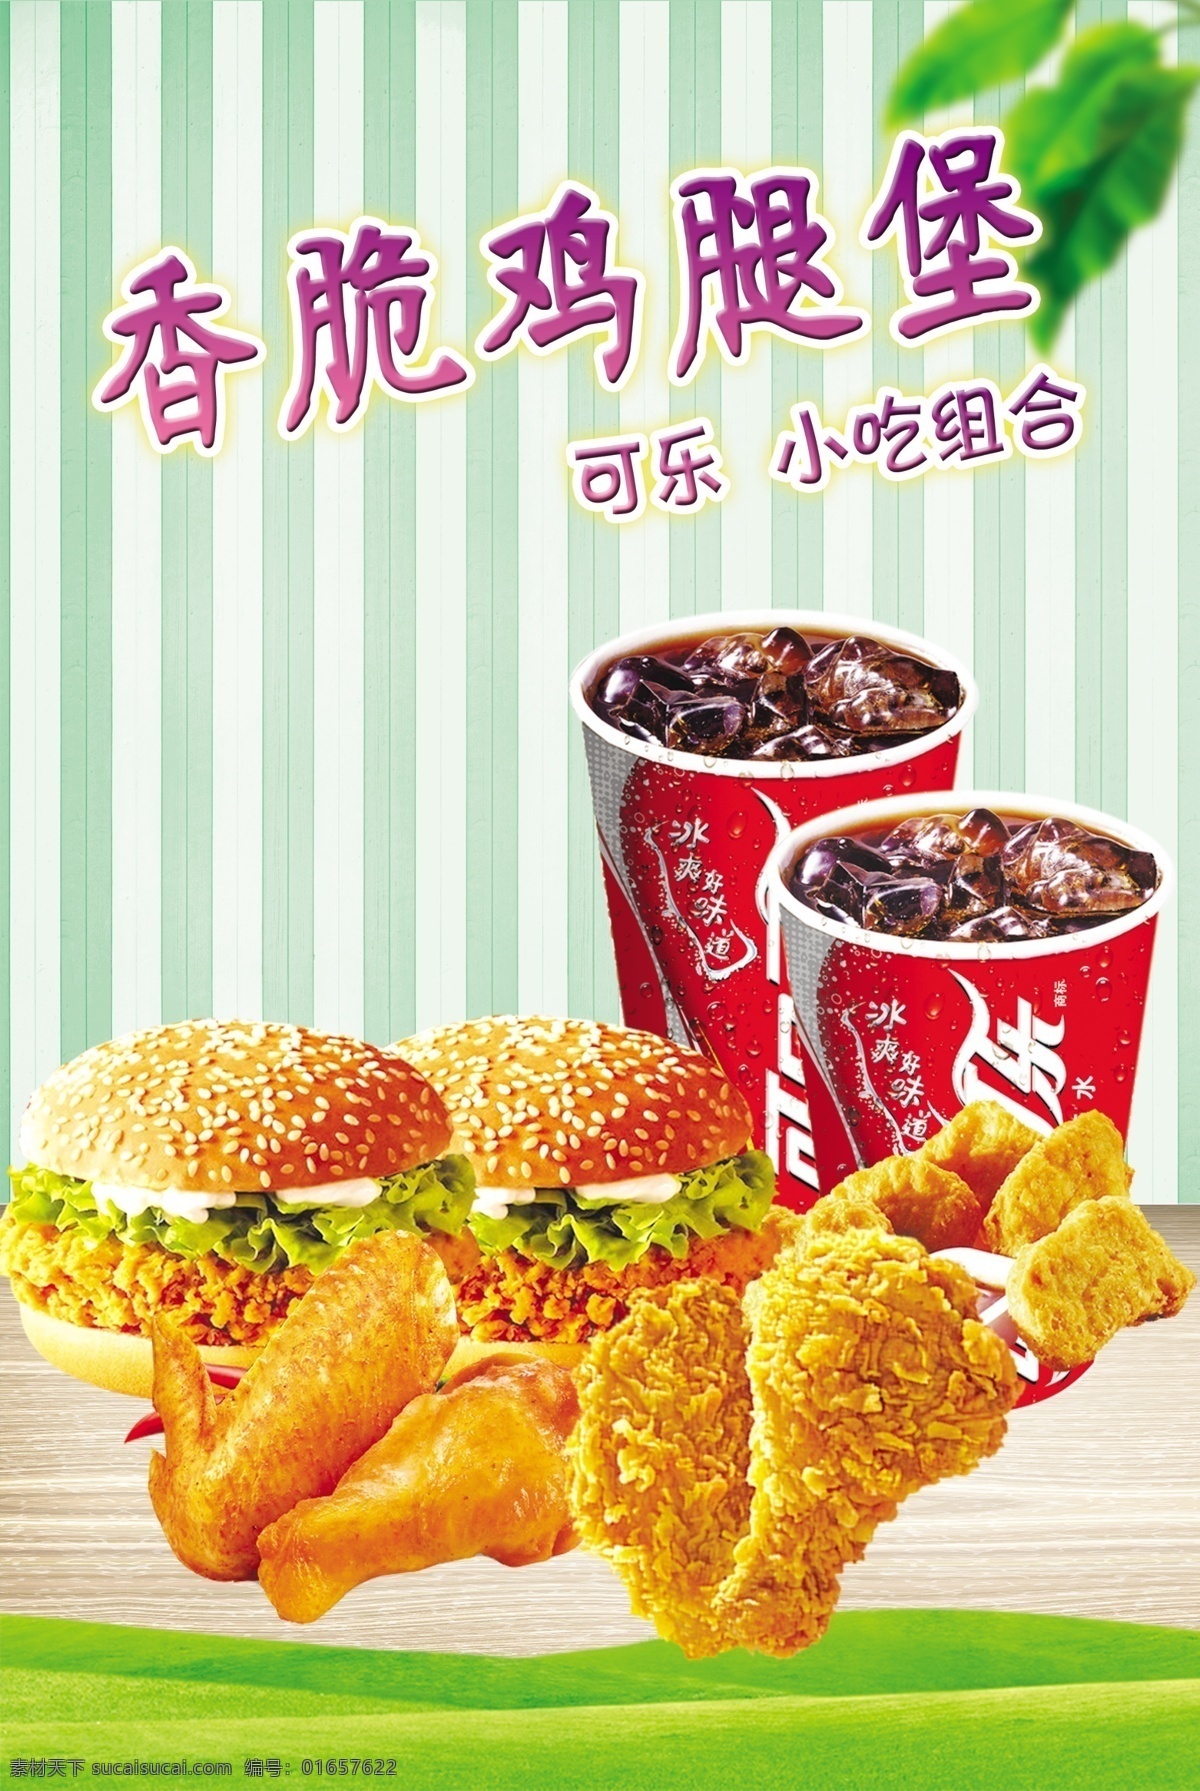 香脆鸡腿堡 鸡翅 可乐 绿叶 条形背景 木地板 小吃组合 海报宣传 饮品